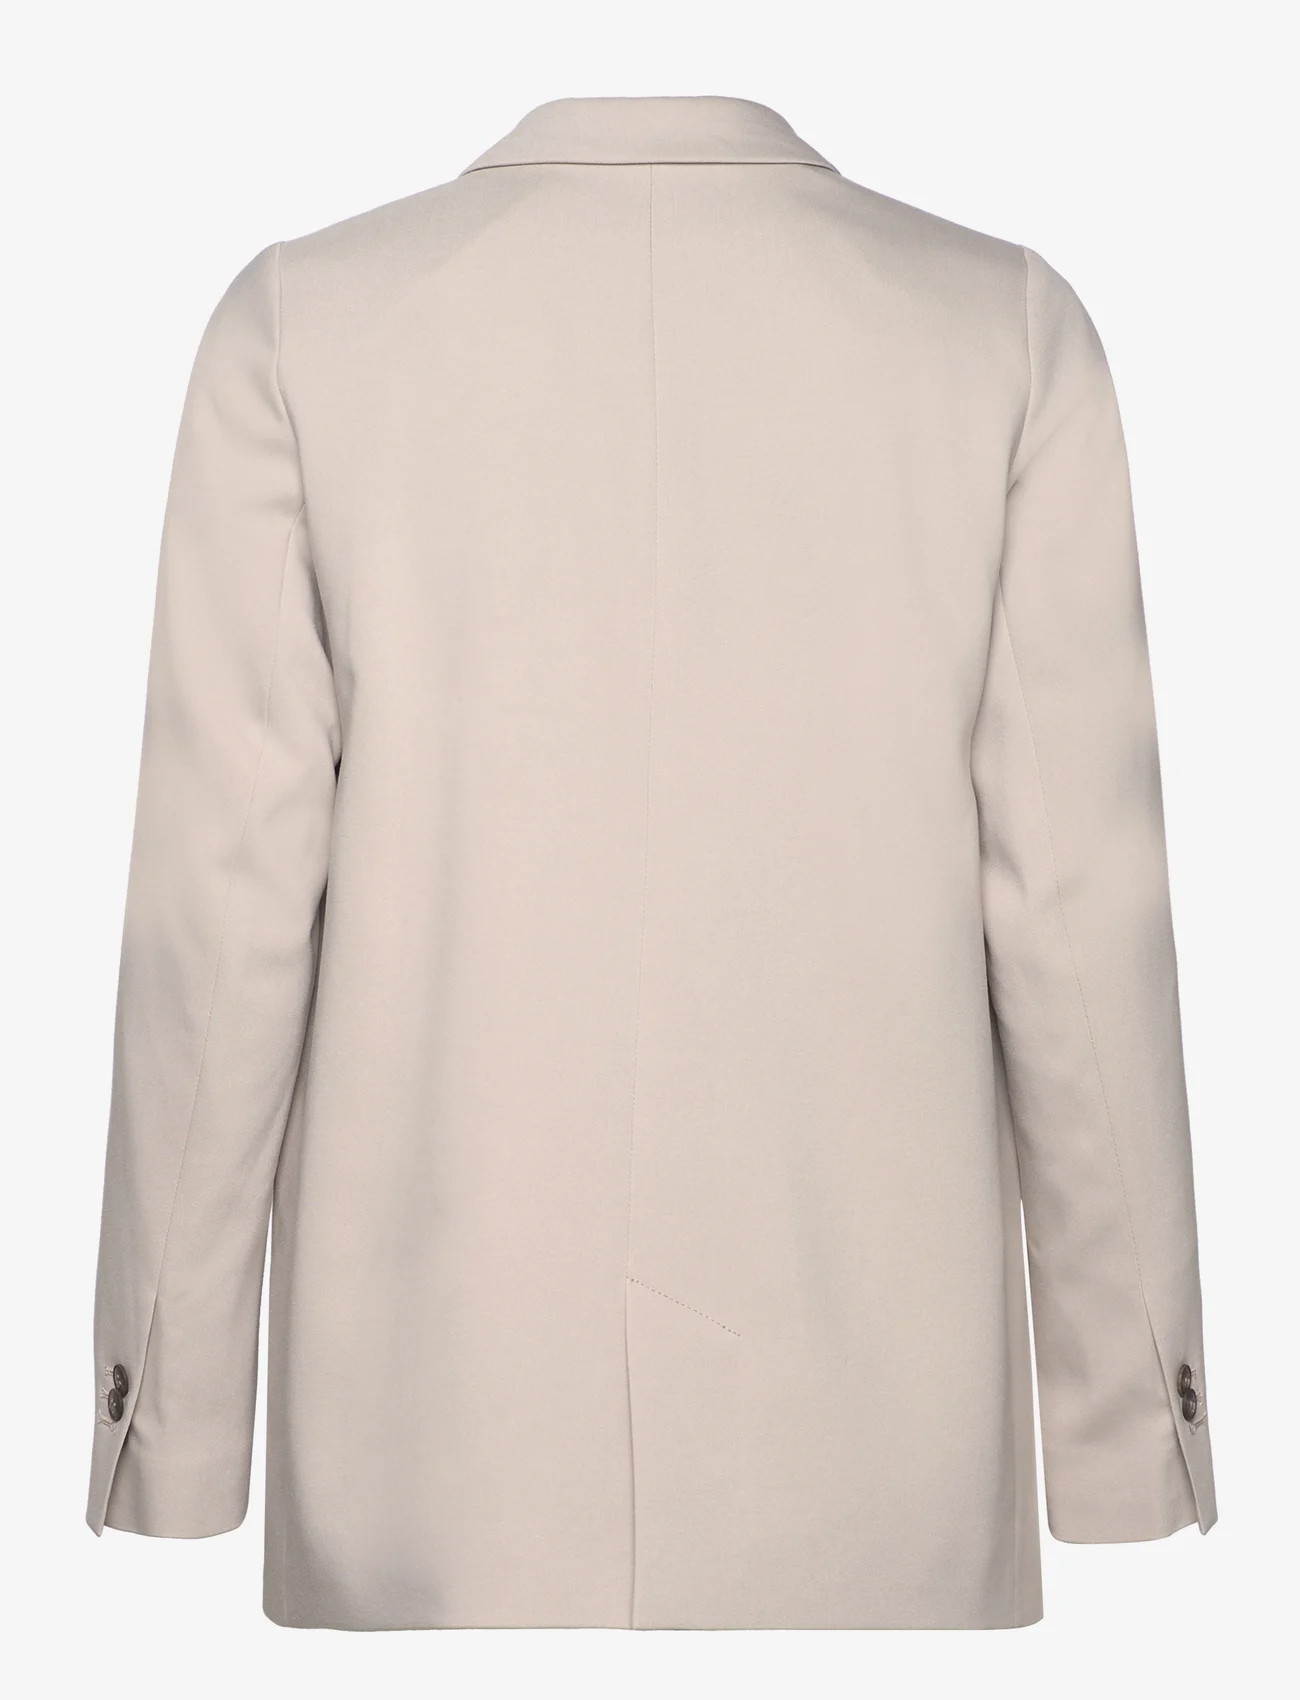 Lexington Clothing - Remi Lyocell Blend Blazer - festtøj til outletpriser - light gray - 1